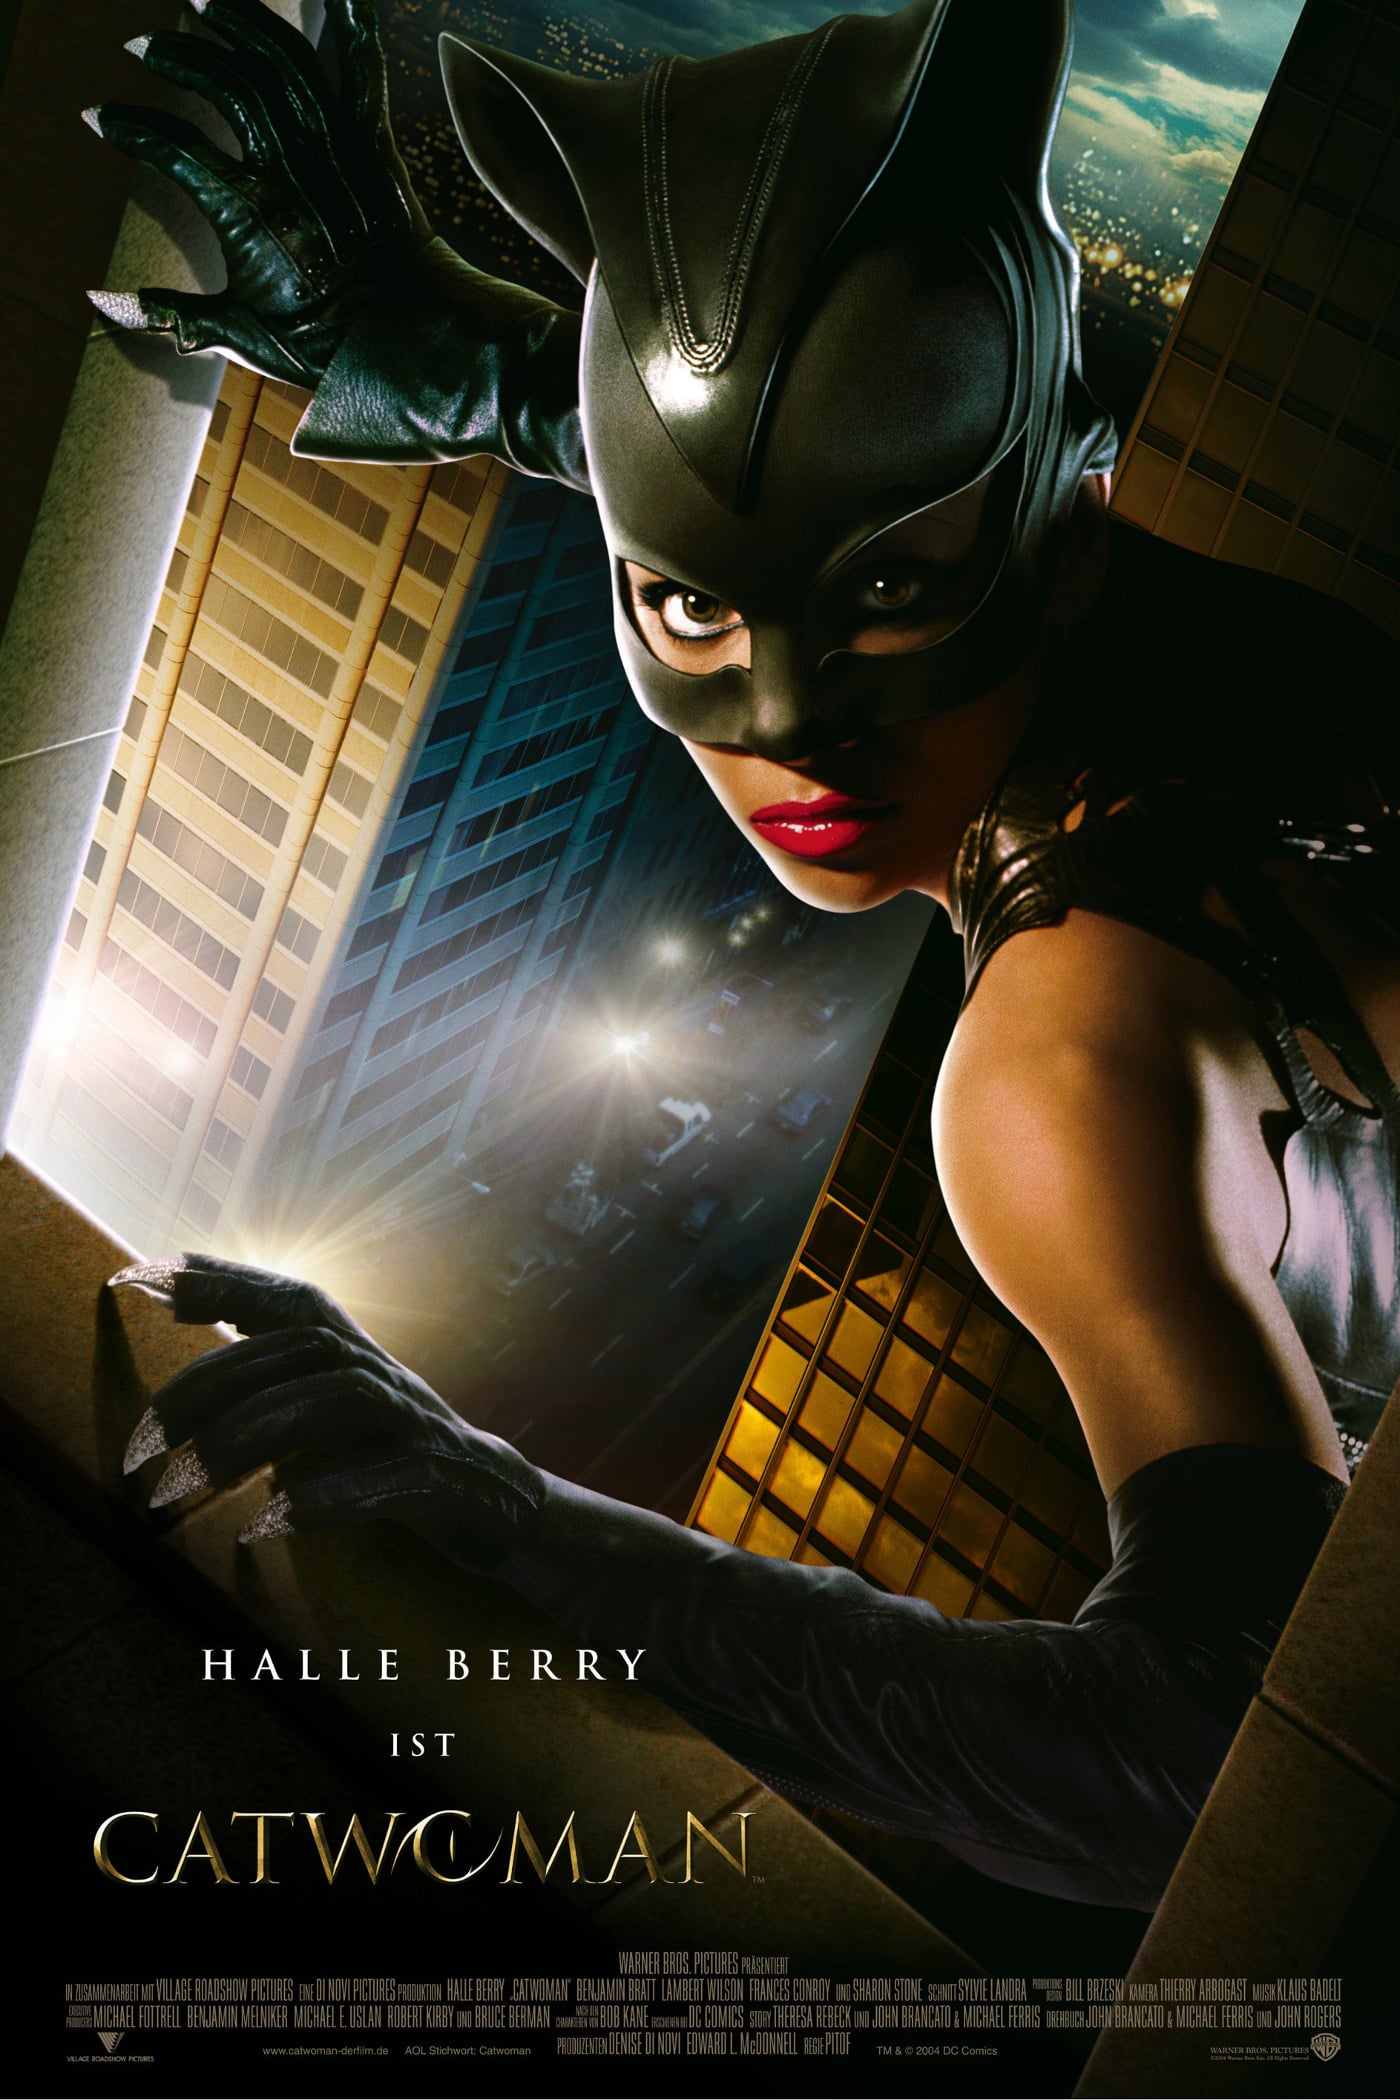 Plakat von "Catwoman"